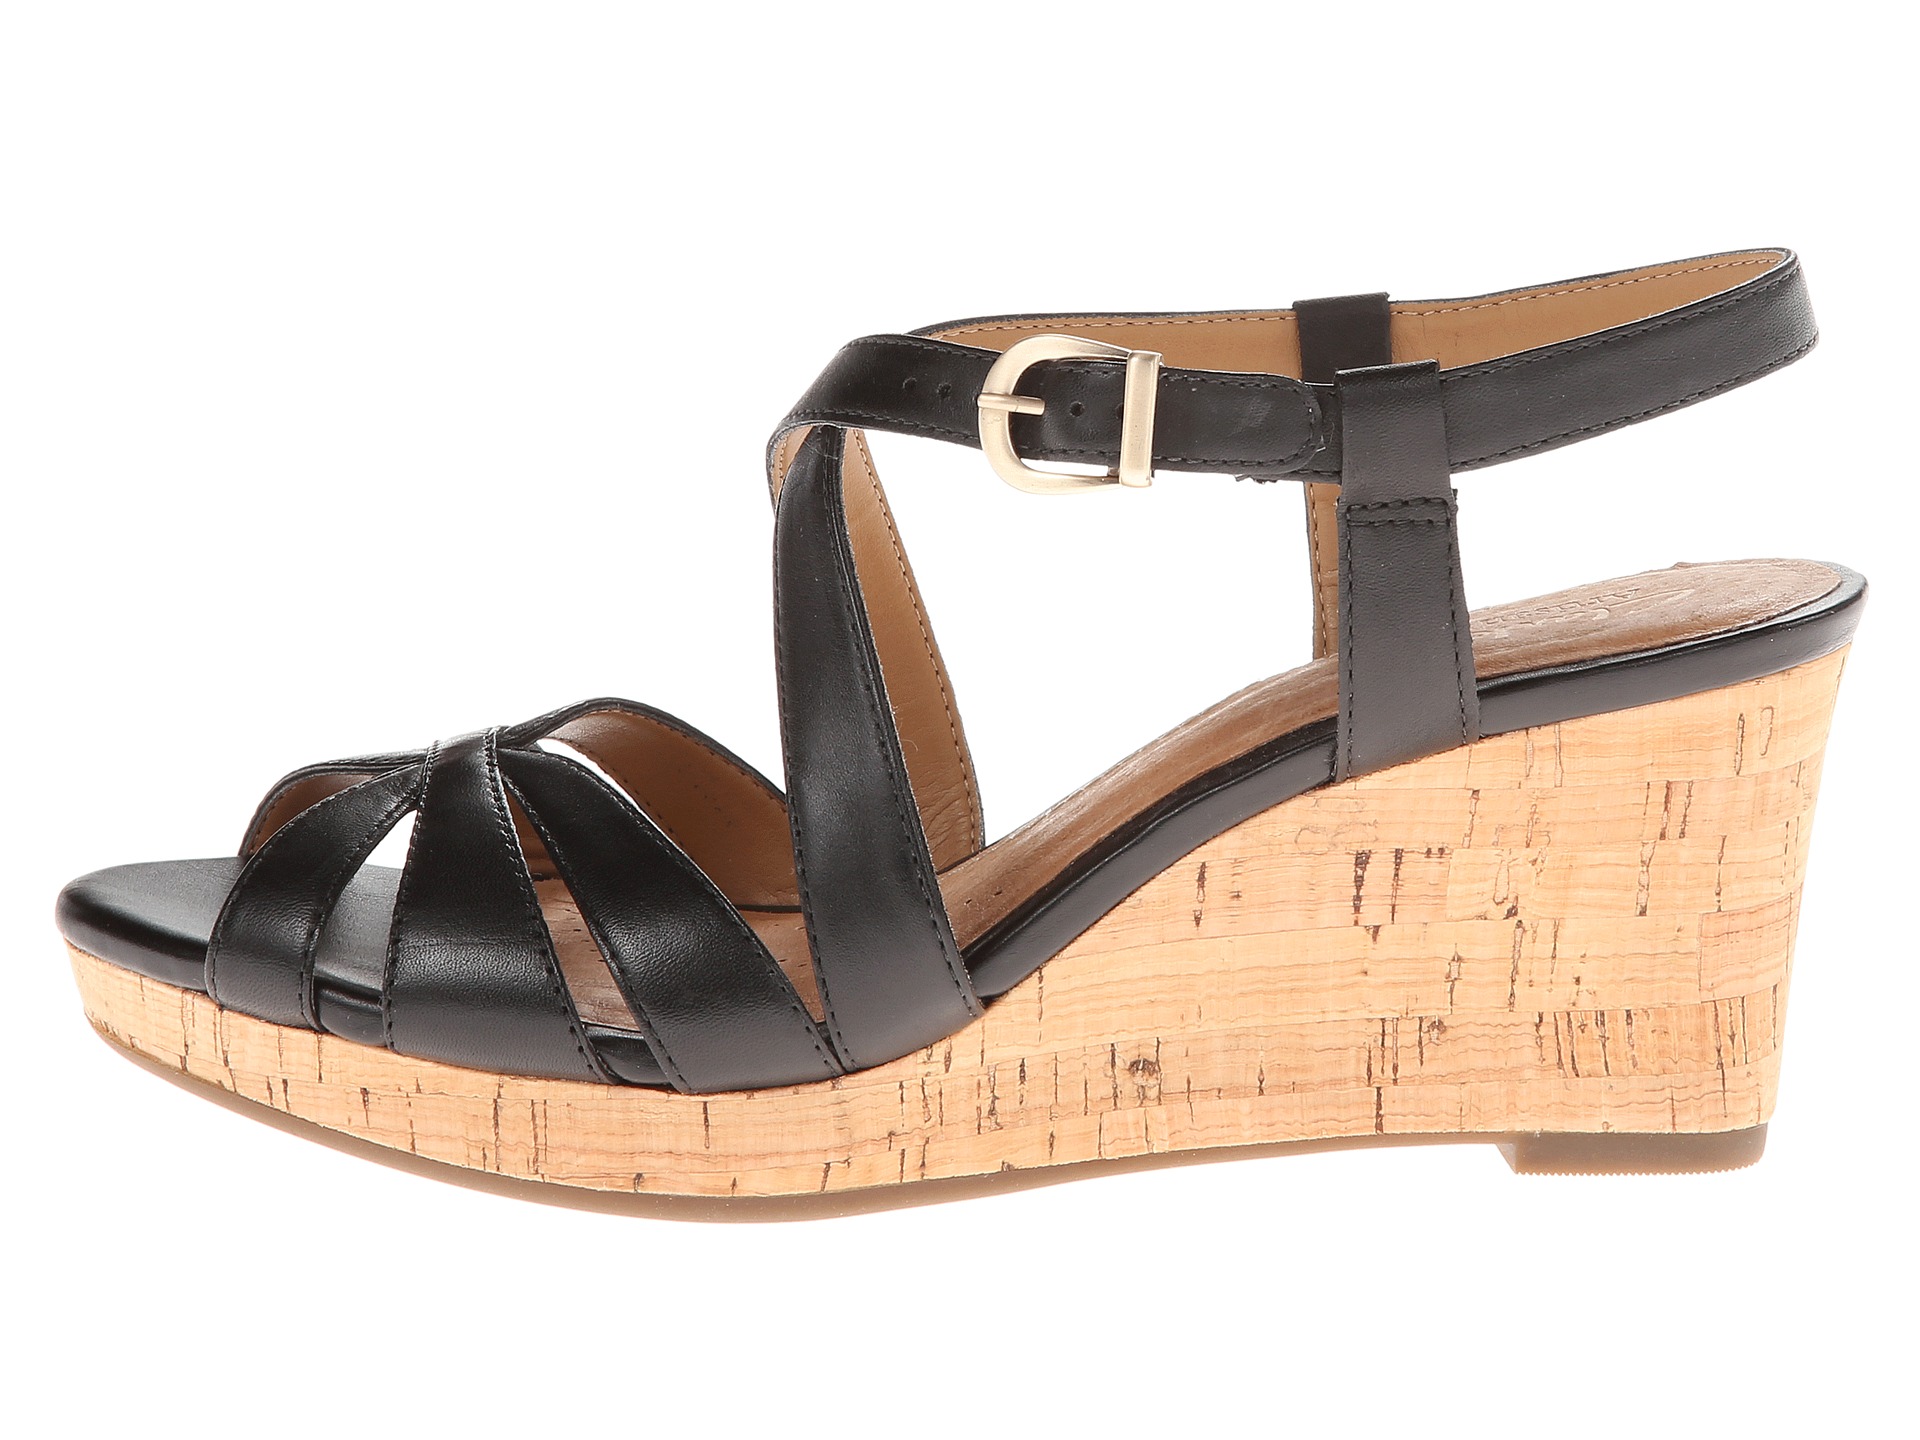 Aerosole Sandals: Clarks Artisan Sandals Zappos